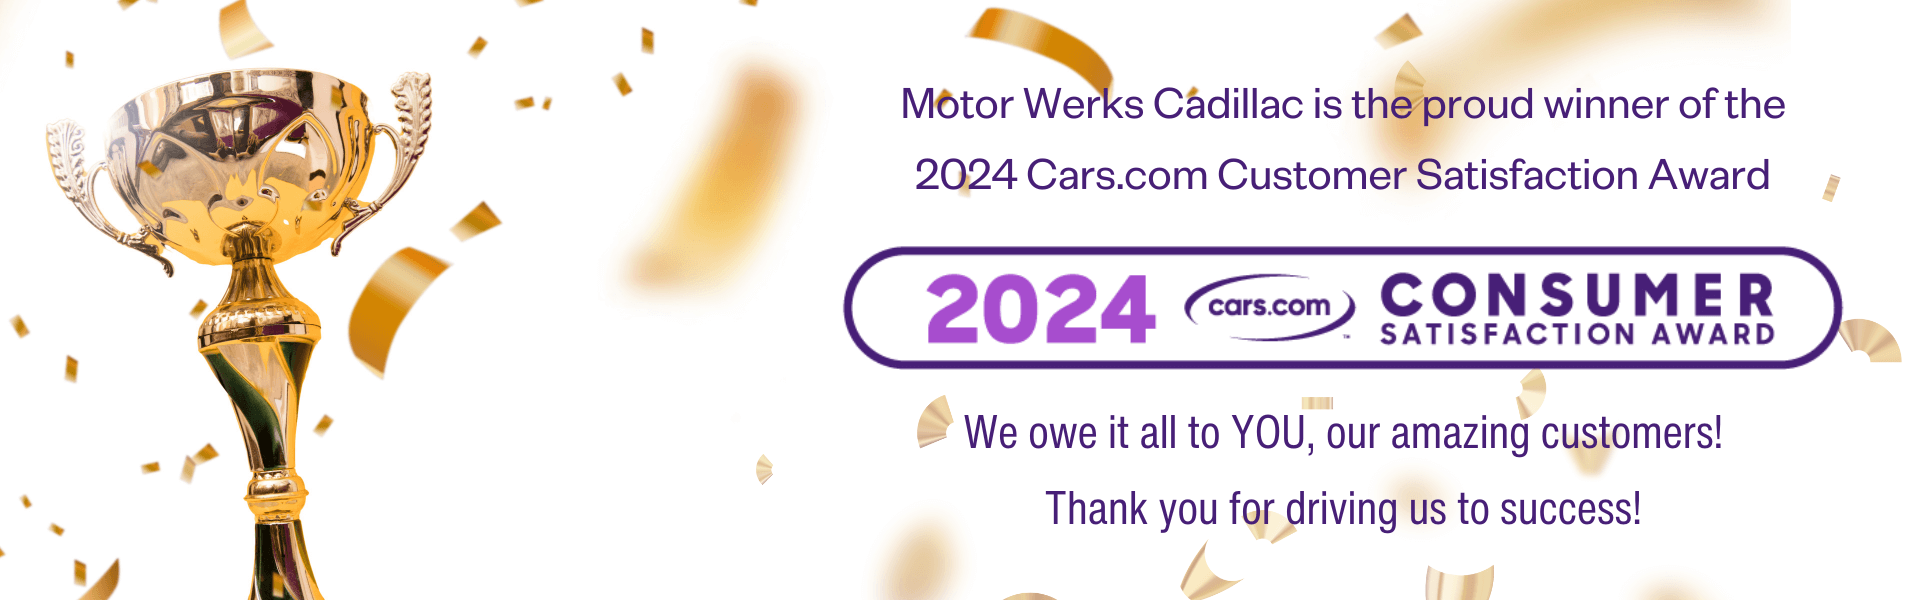 Motor Werks Cadillac - Cars.com Award Winner